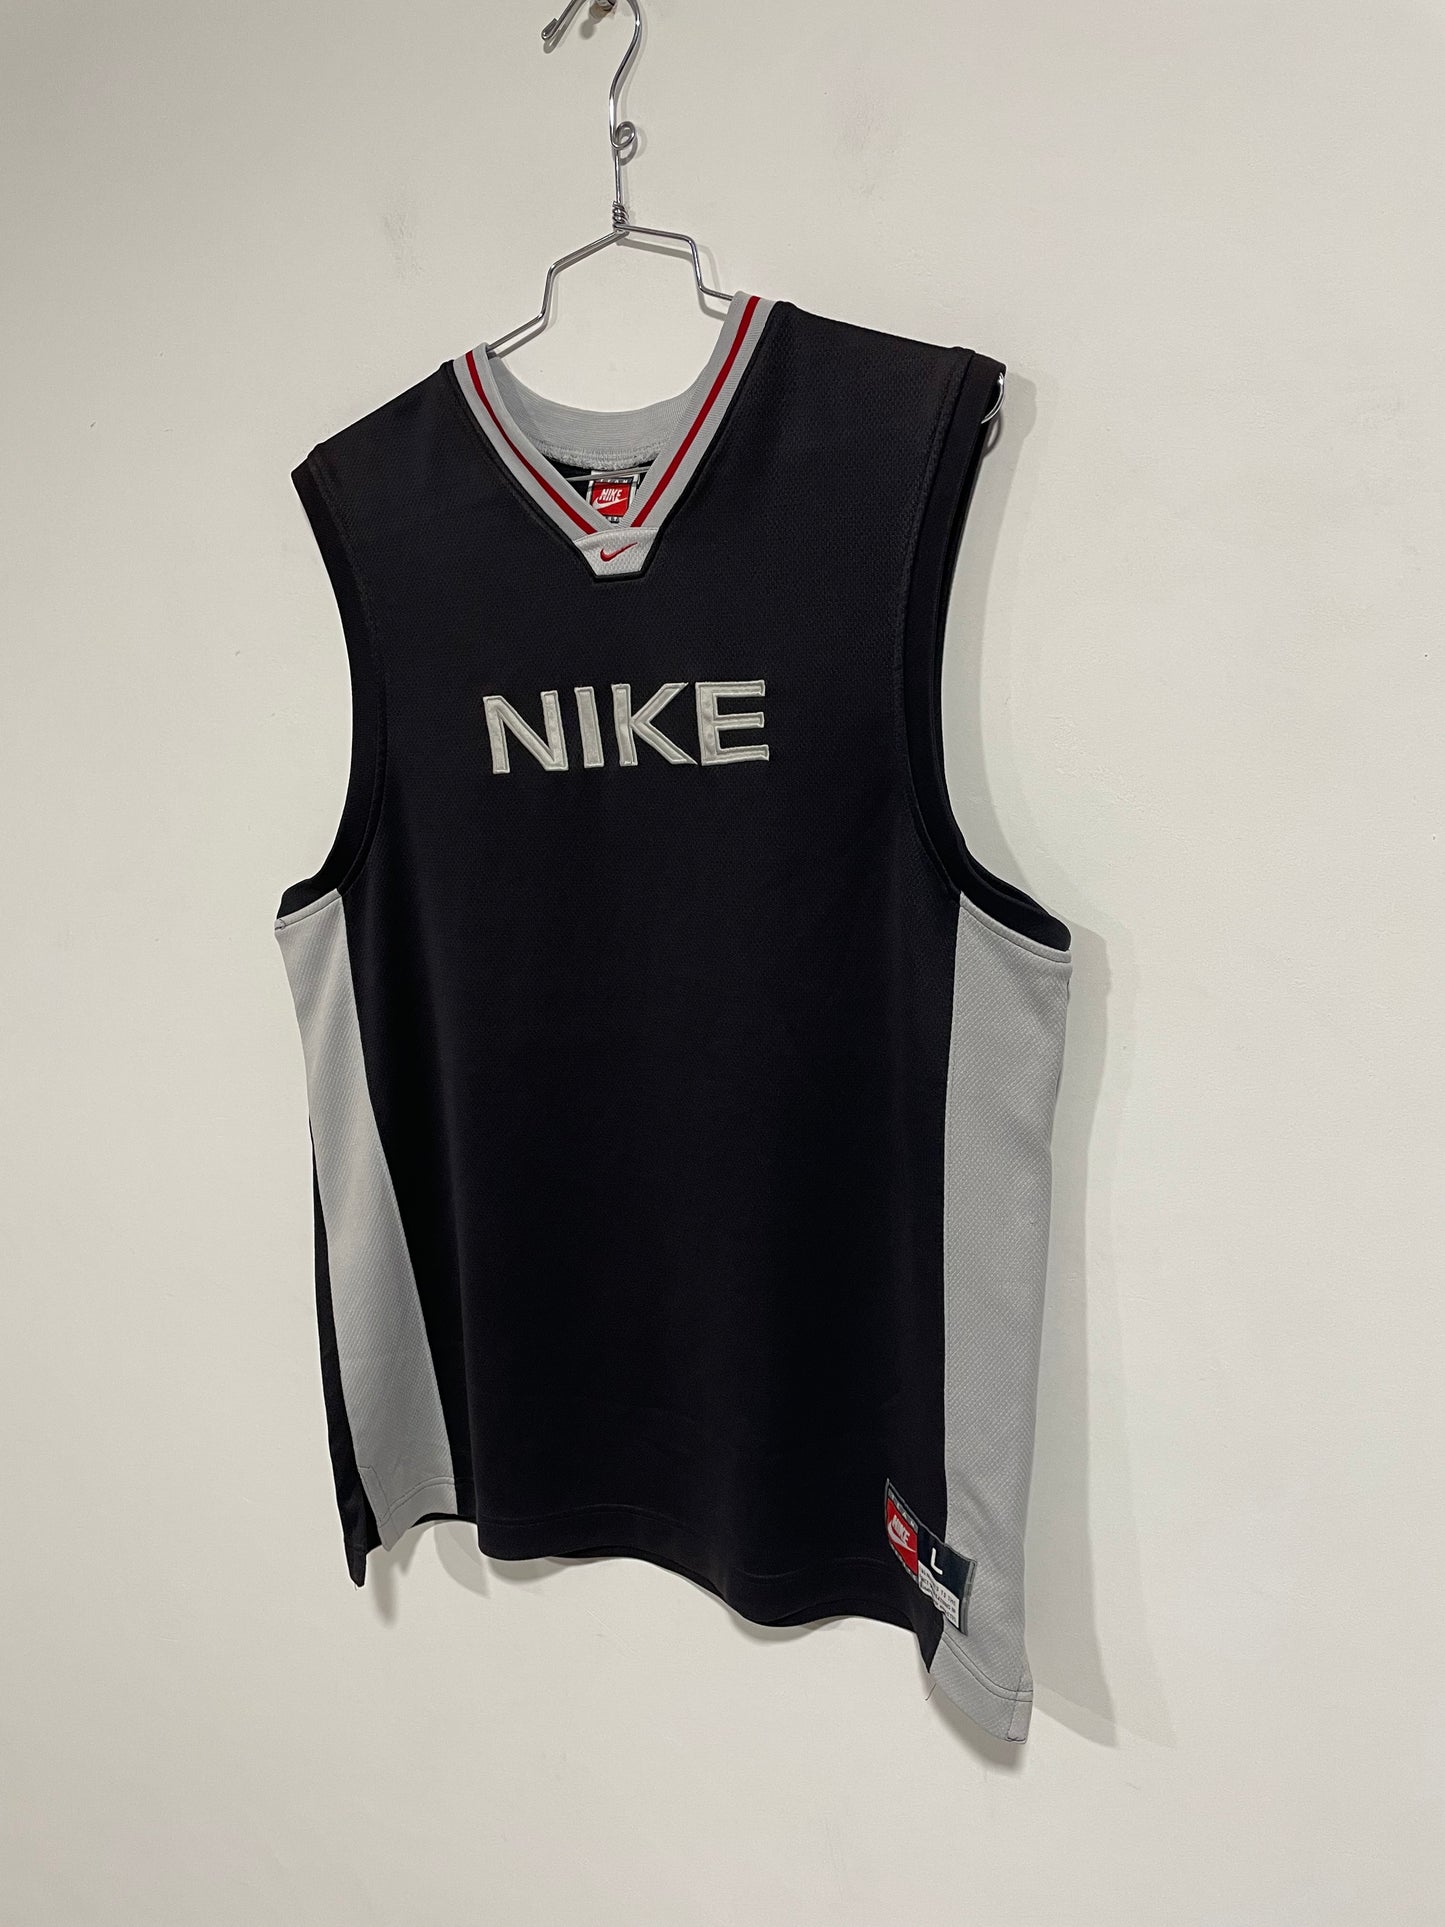 Canotta Nike anni 90 (D054)